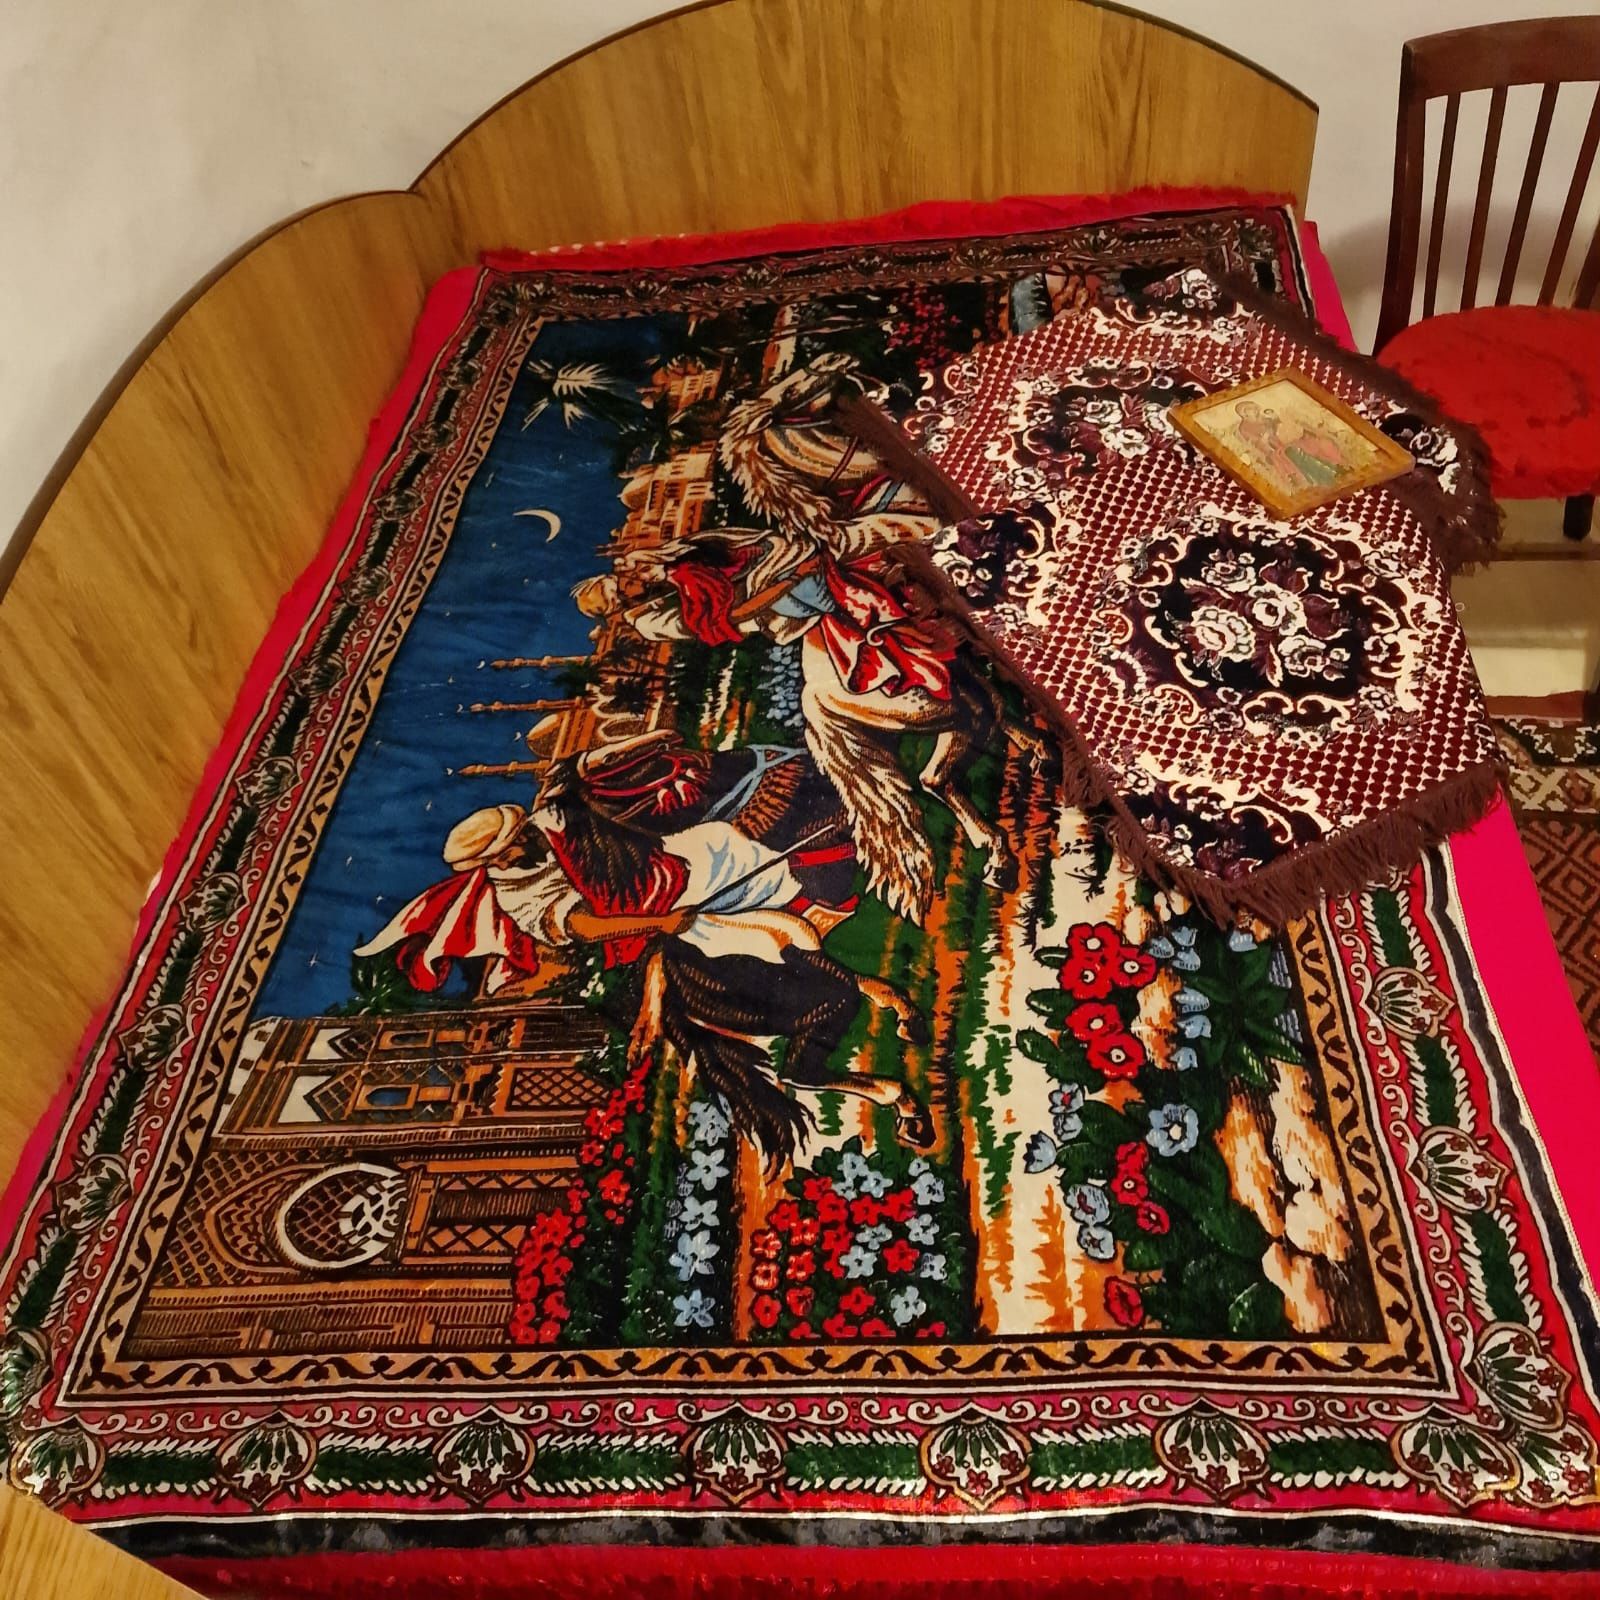 Vintage Carpeta Rapirea din serai + 2 huse persan ptr scaun.